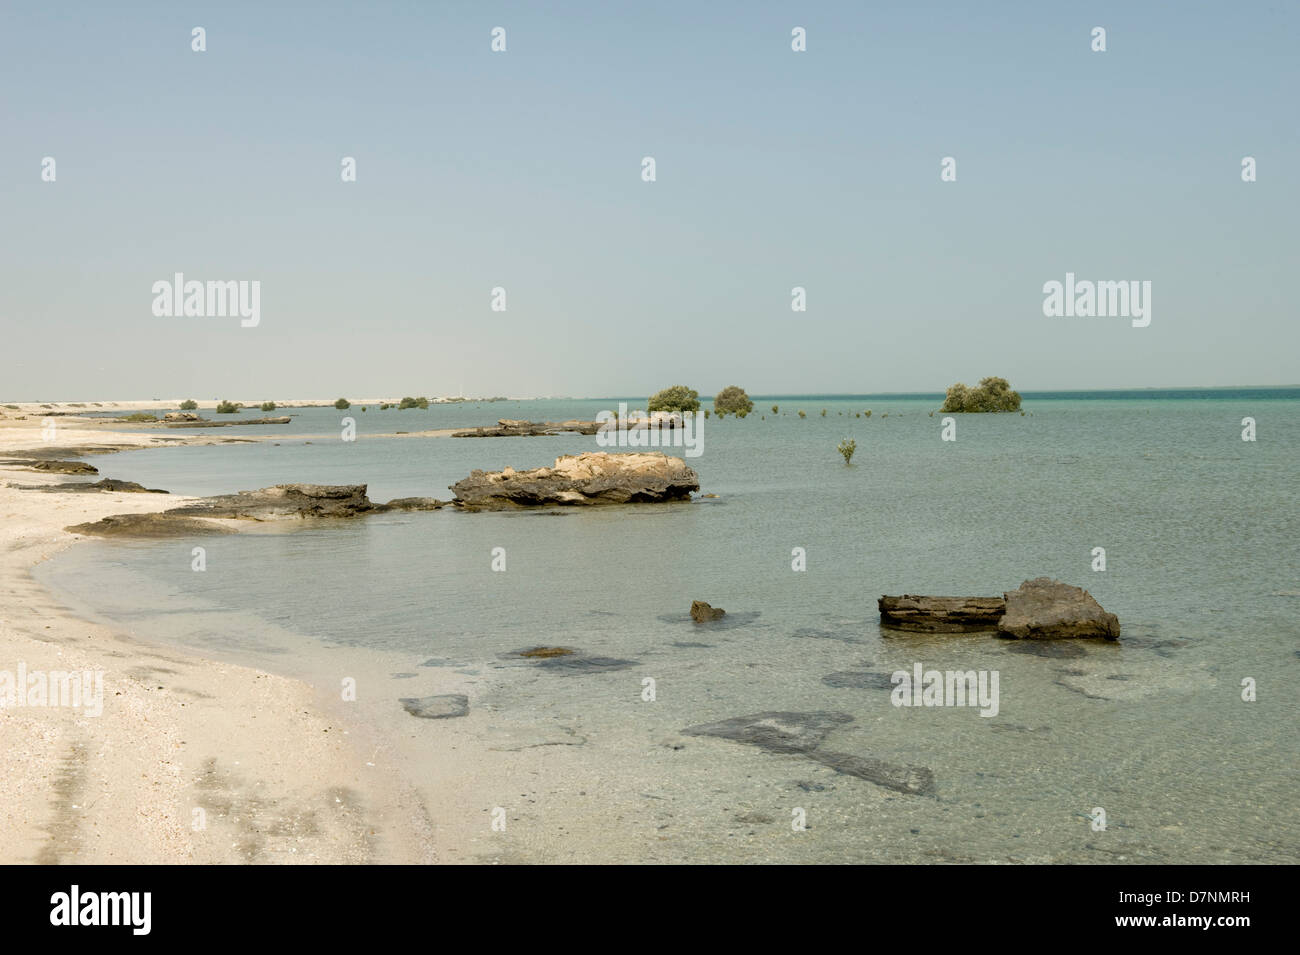 Einem entfernten Abu Dhabi Strand mit Felsen, Sand Meer am Persischen Golf bei Hochwasser und isolierten Reifen und jungen grauen Mangroven Stockfoto